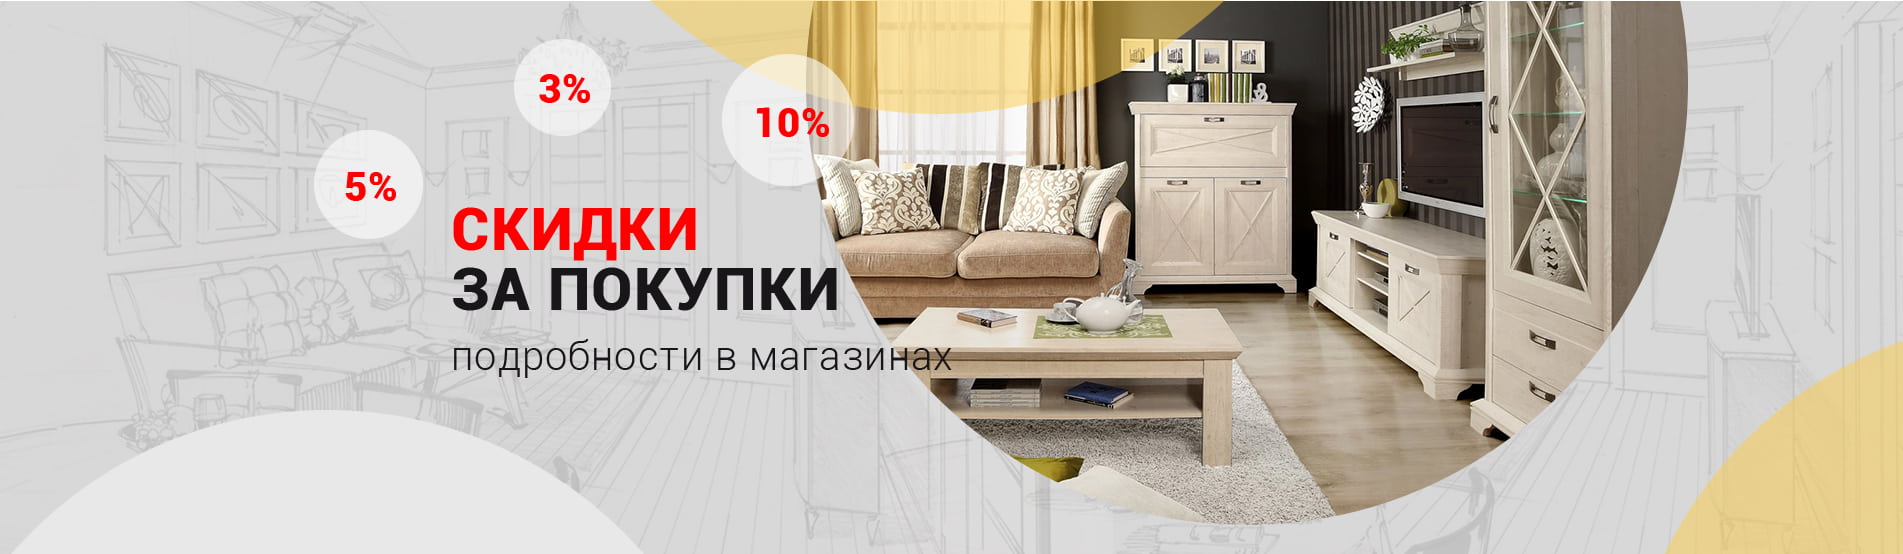 Каталоги Мебельных Магазинов Курска